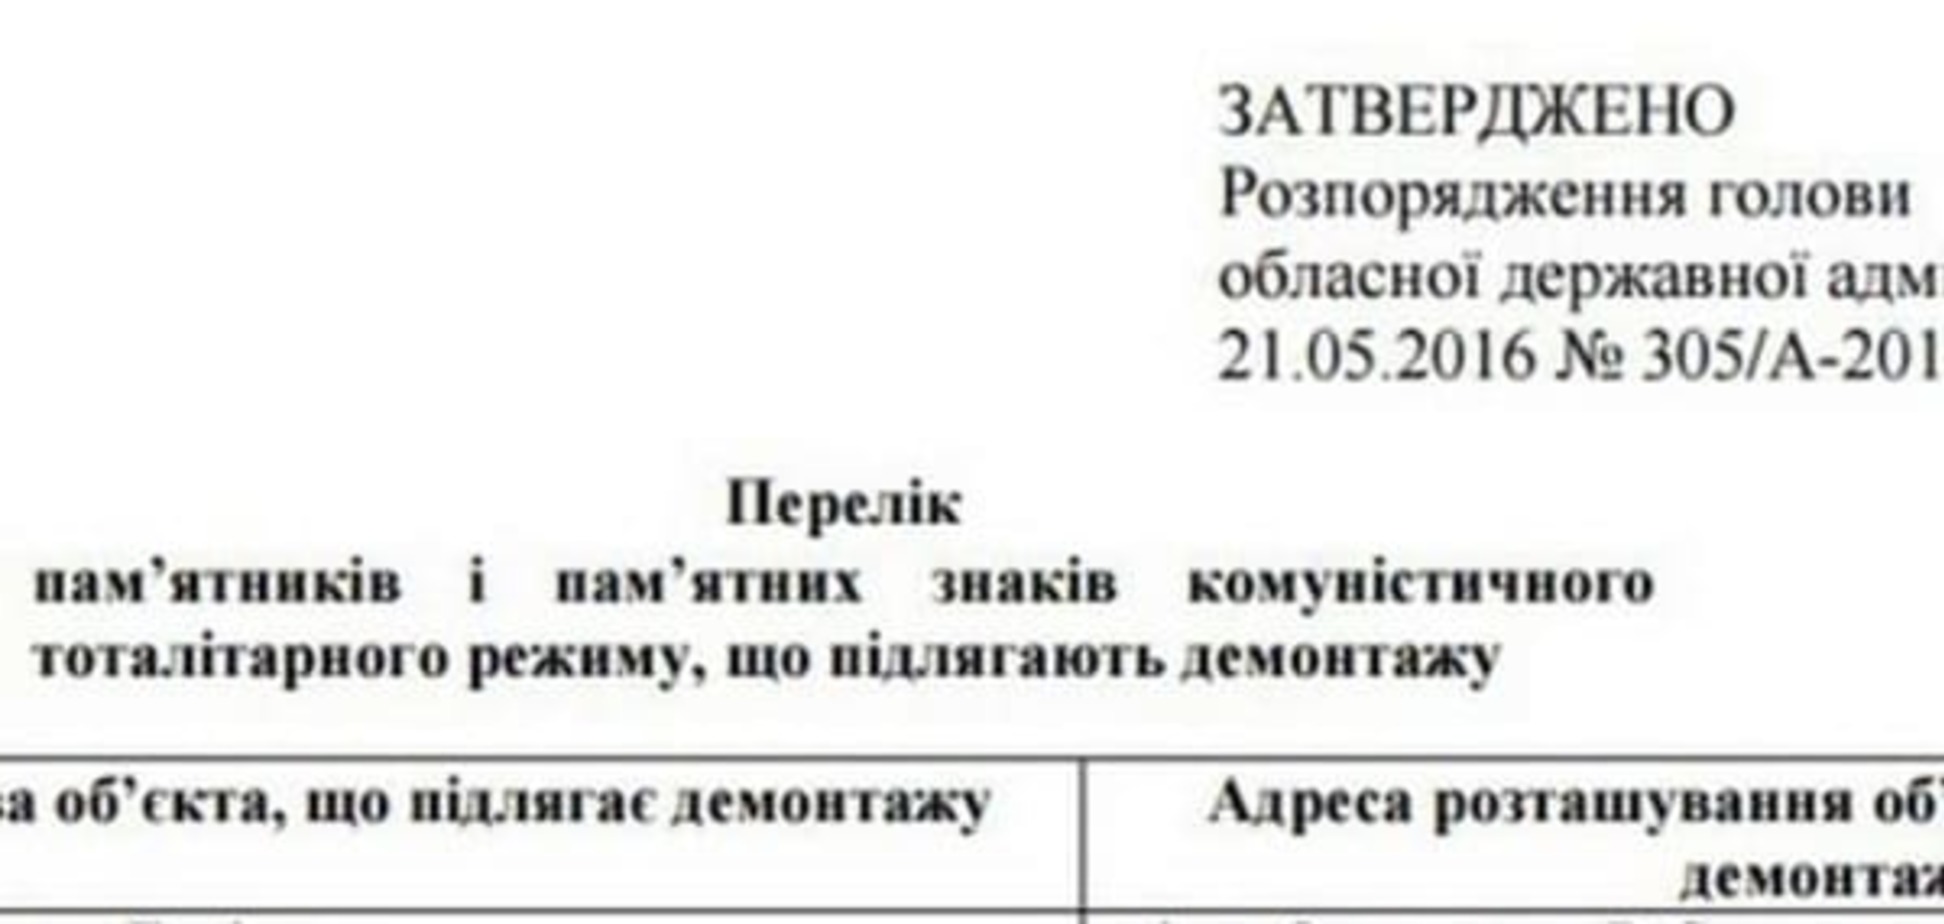 У Саакашвили подтвердили намерение переименовать одесские улицы, а также удалить все упоминания о Жукове